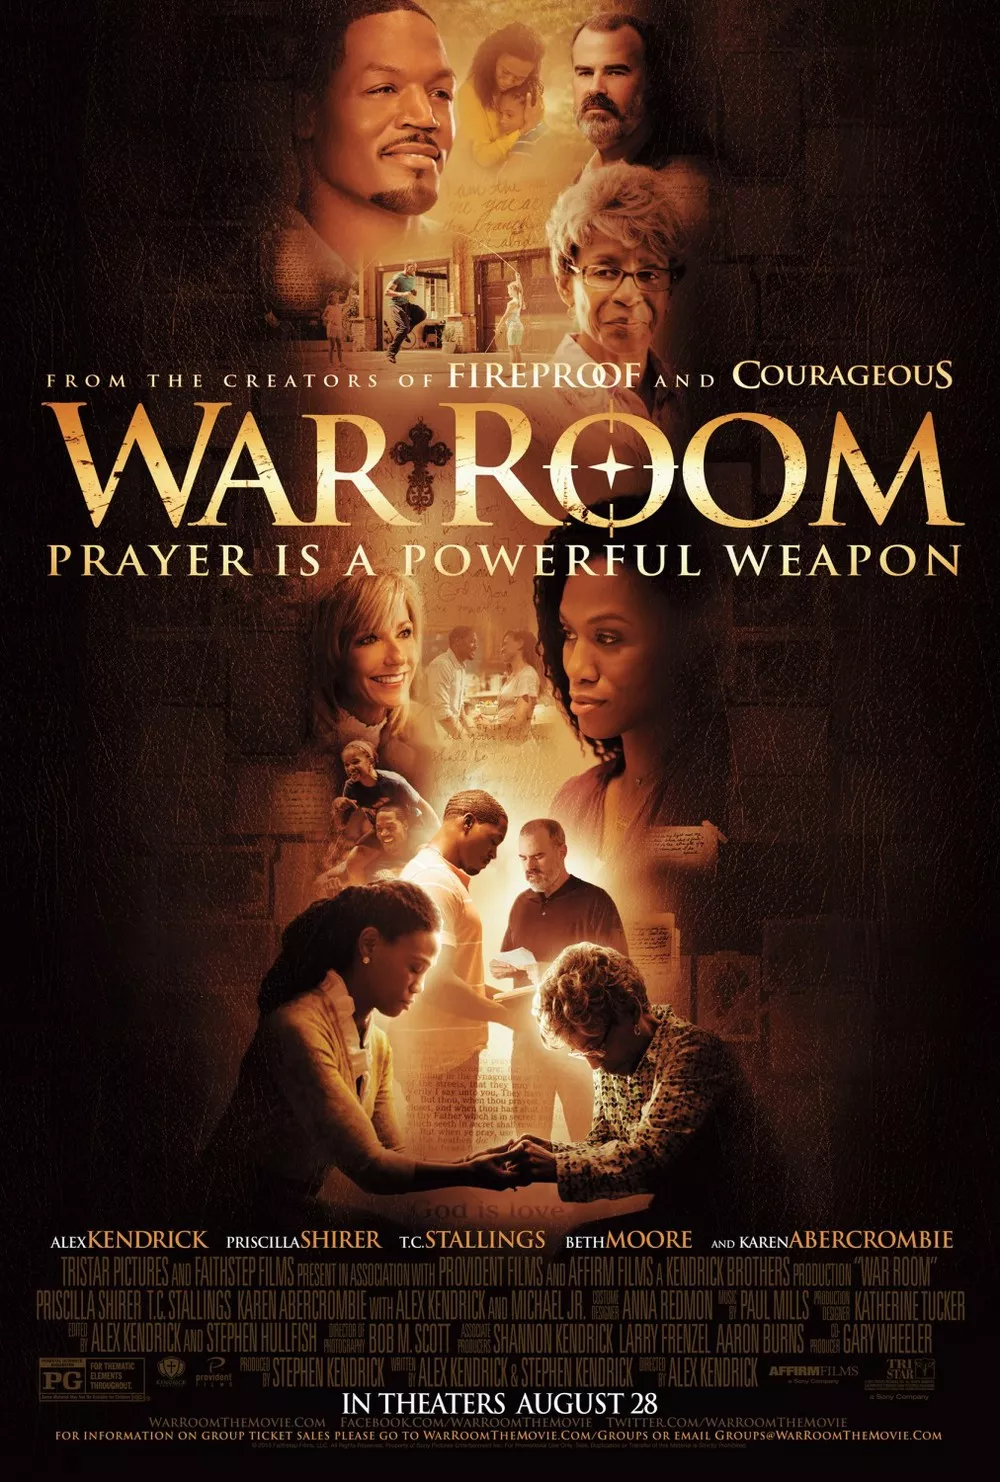 ดูหนัง War Room (2015) วอร์ รูม ซับไทย เต็มเรื่อง | 9NUNGHD.COM